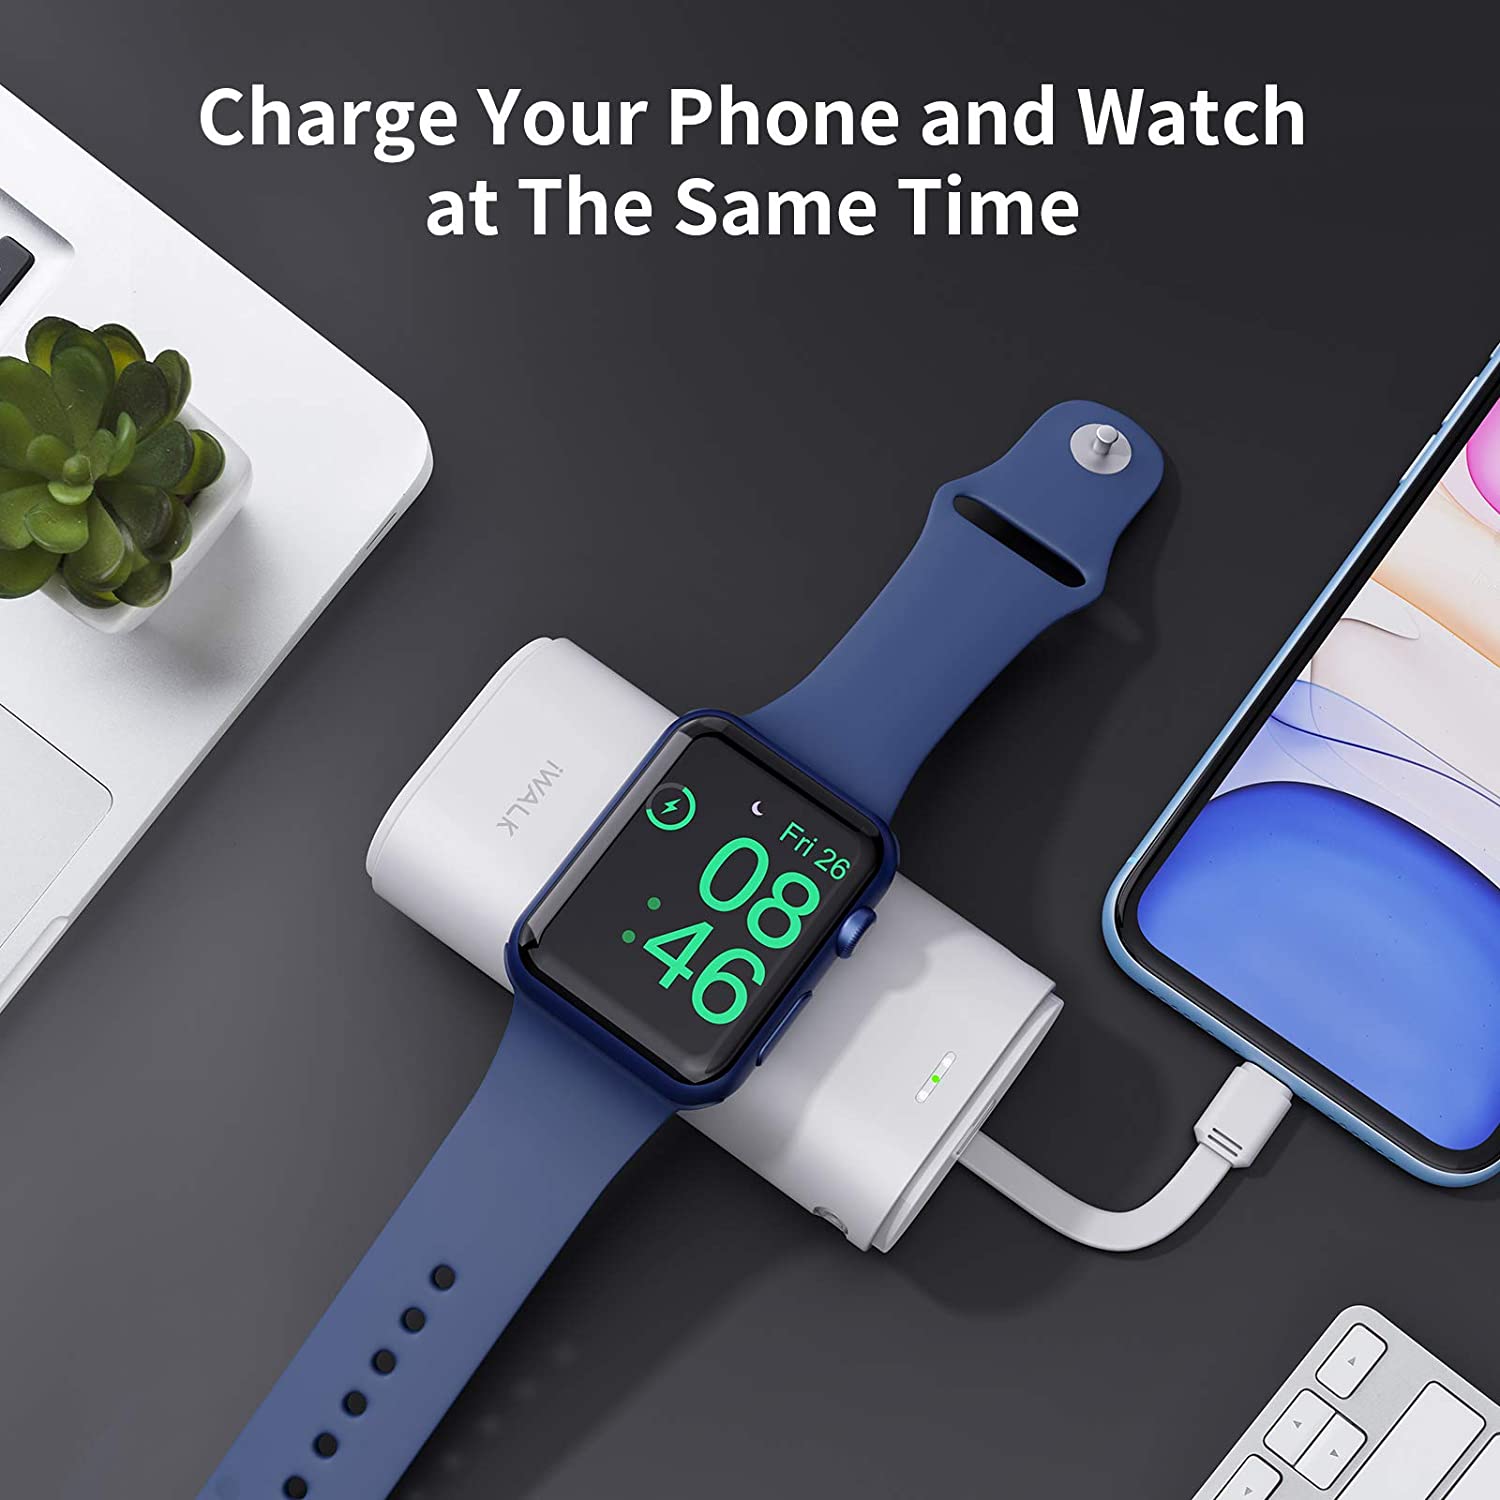 I migliori accessori per Apple Watch della primavera 2022